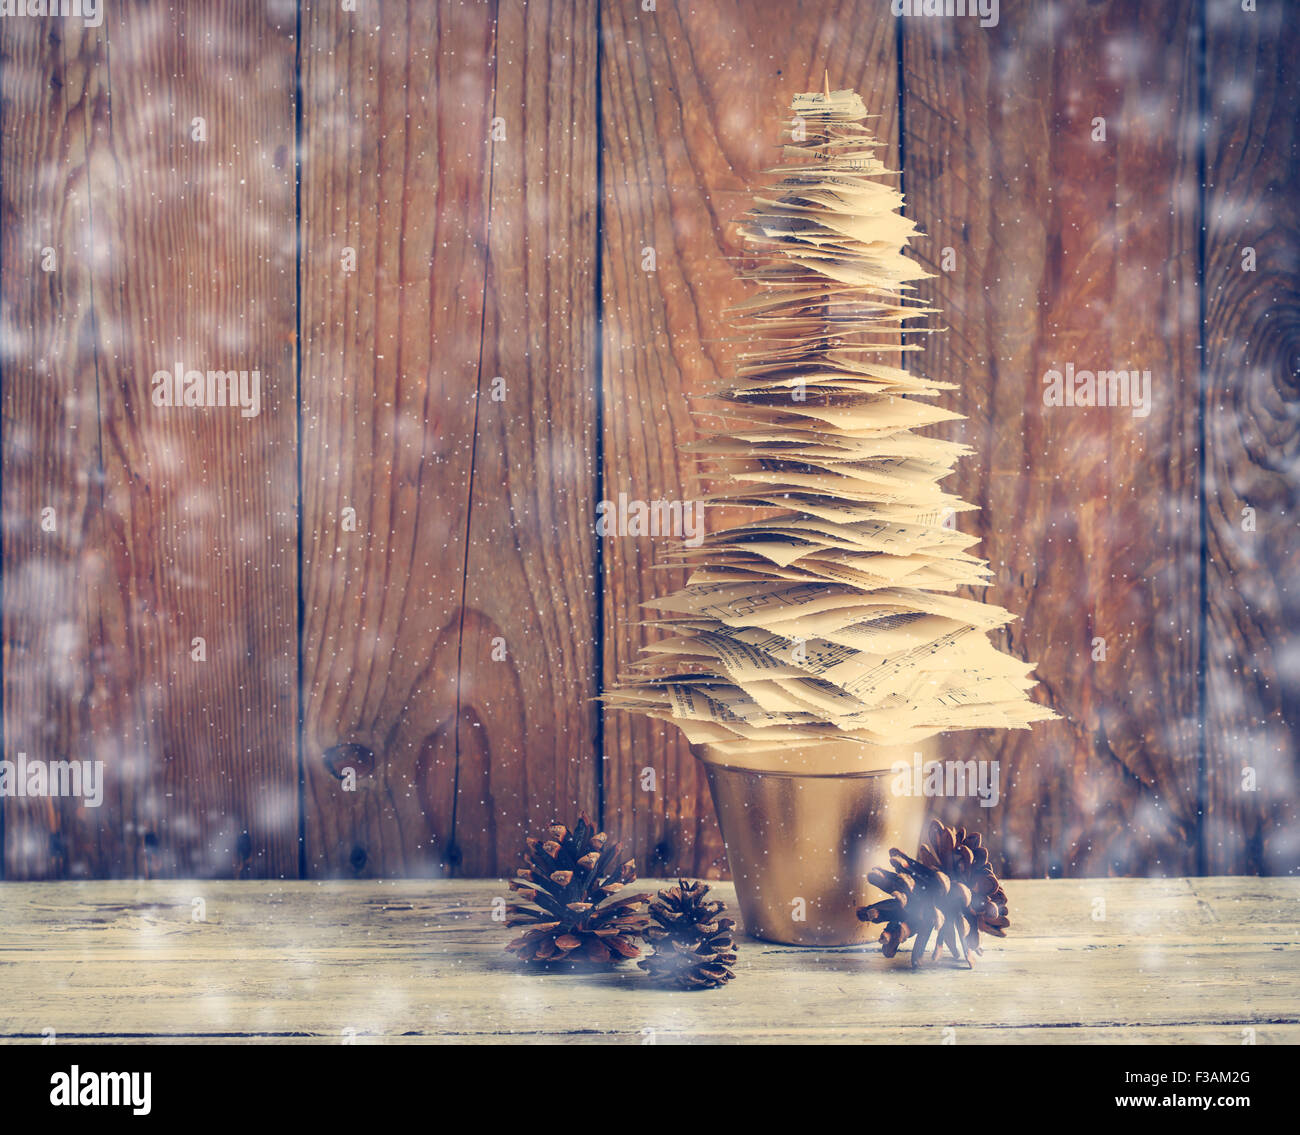 Arbre de Noël en papier. Décoration de Noël. Image tonique Banque D'Images